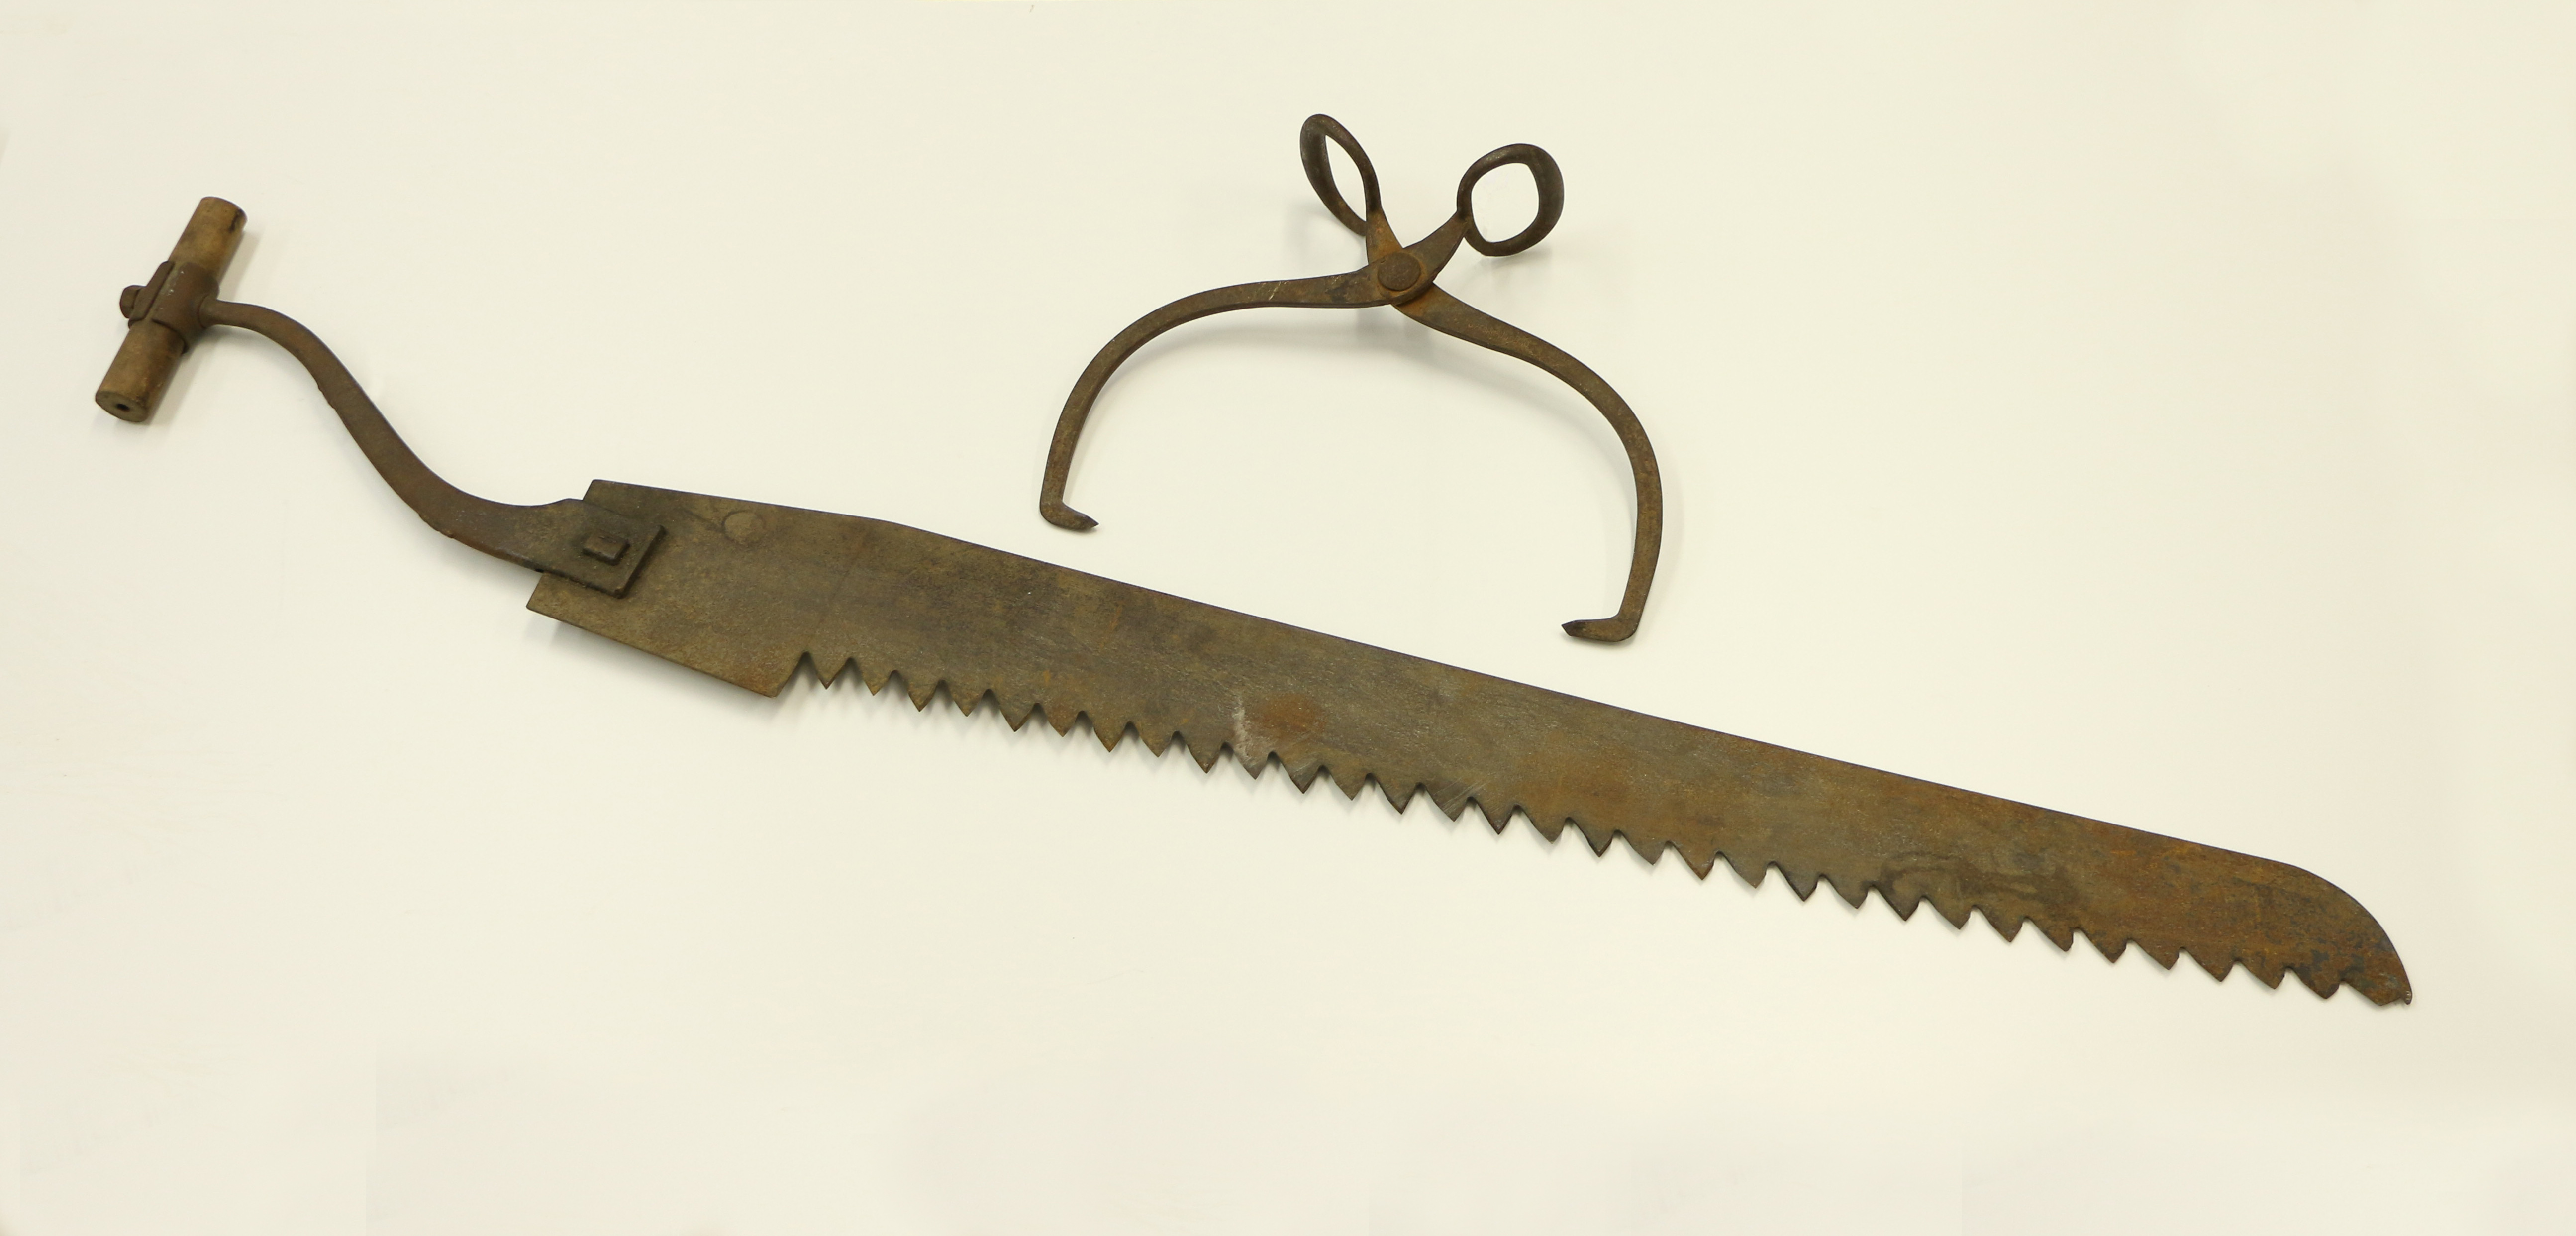 Photographie d’outils pour la coupe de glace. Sur un fond blanc, une pince en métal brun utilisée pour transporter les blocs et une scie en fer rouillé avec une poignée en bois.